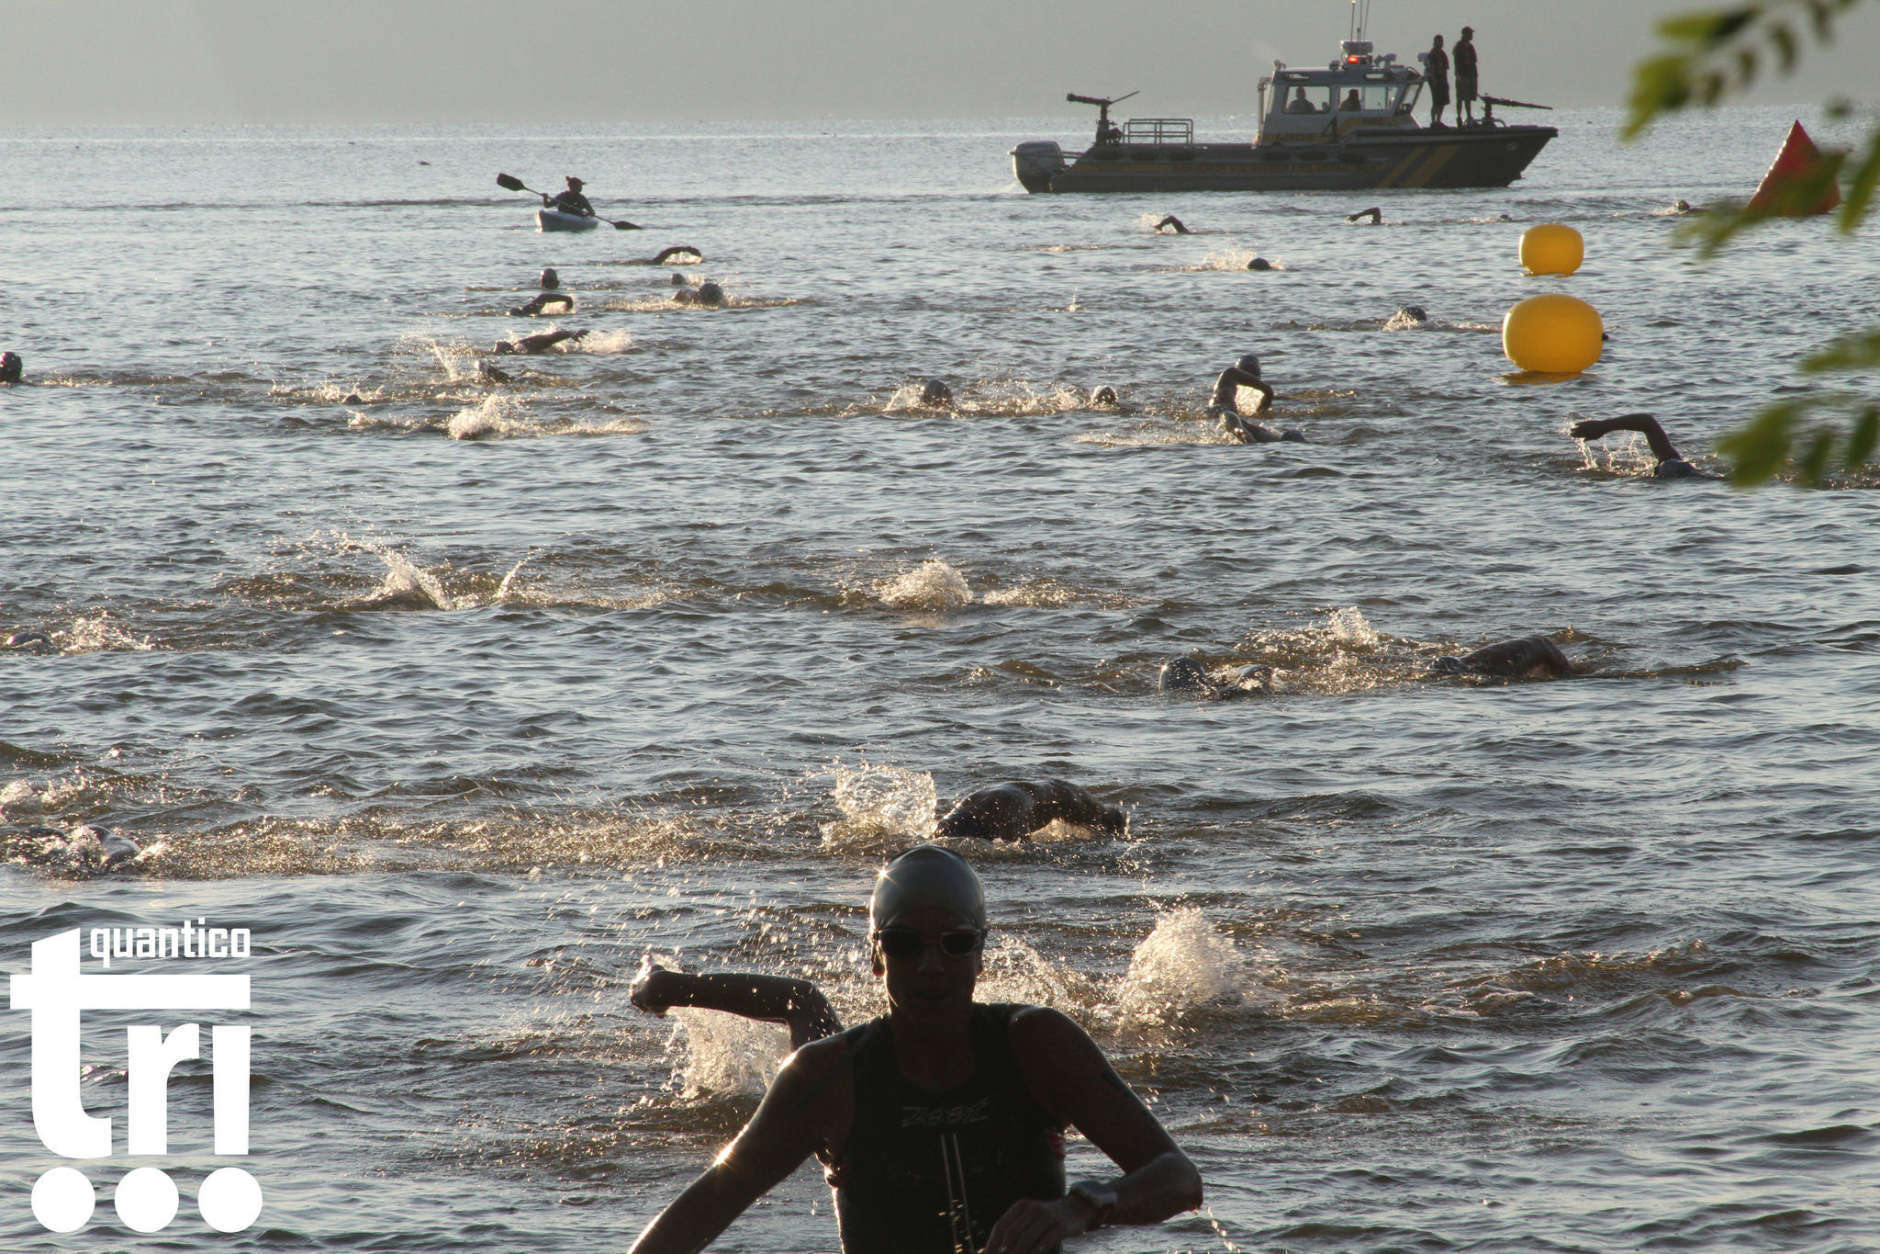 Swimmers compete in the 2016 Quantico Tri. (Courtesy Marine Corps Marathon)